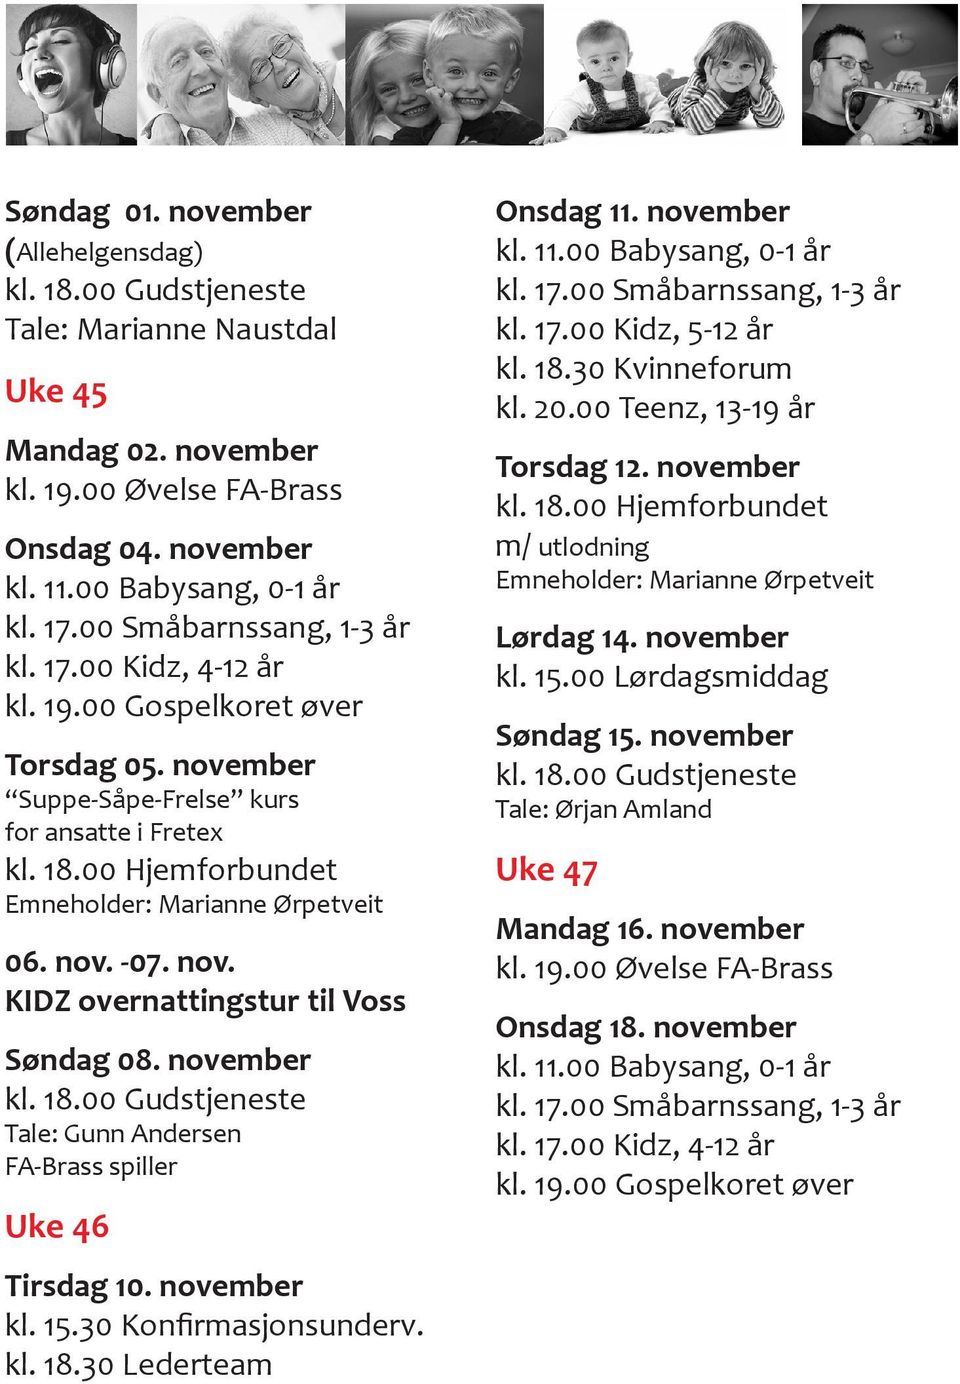 november kl. 18.00 Gudstjeneste Tale: Gunn Andersen FA-Brass spiller Uke 46 Tirsdag 10. november kl. 15.30 Konfirmasjonsunderv. kl. 18.30 Lederteam Onsdag 11. november kl. 17.